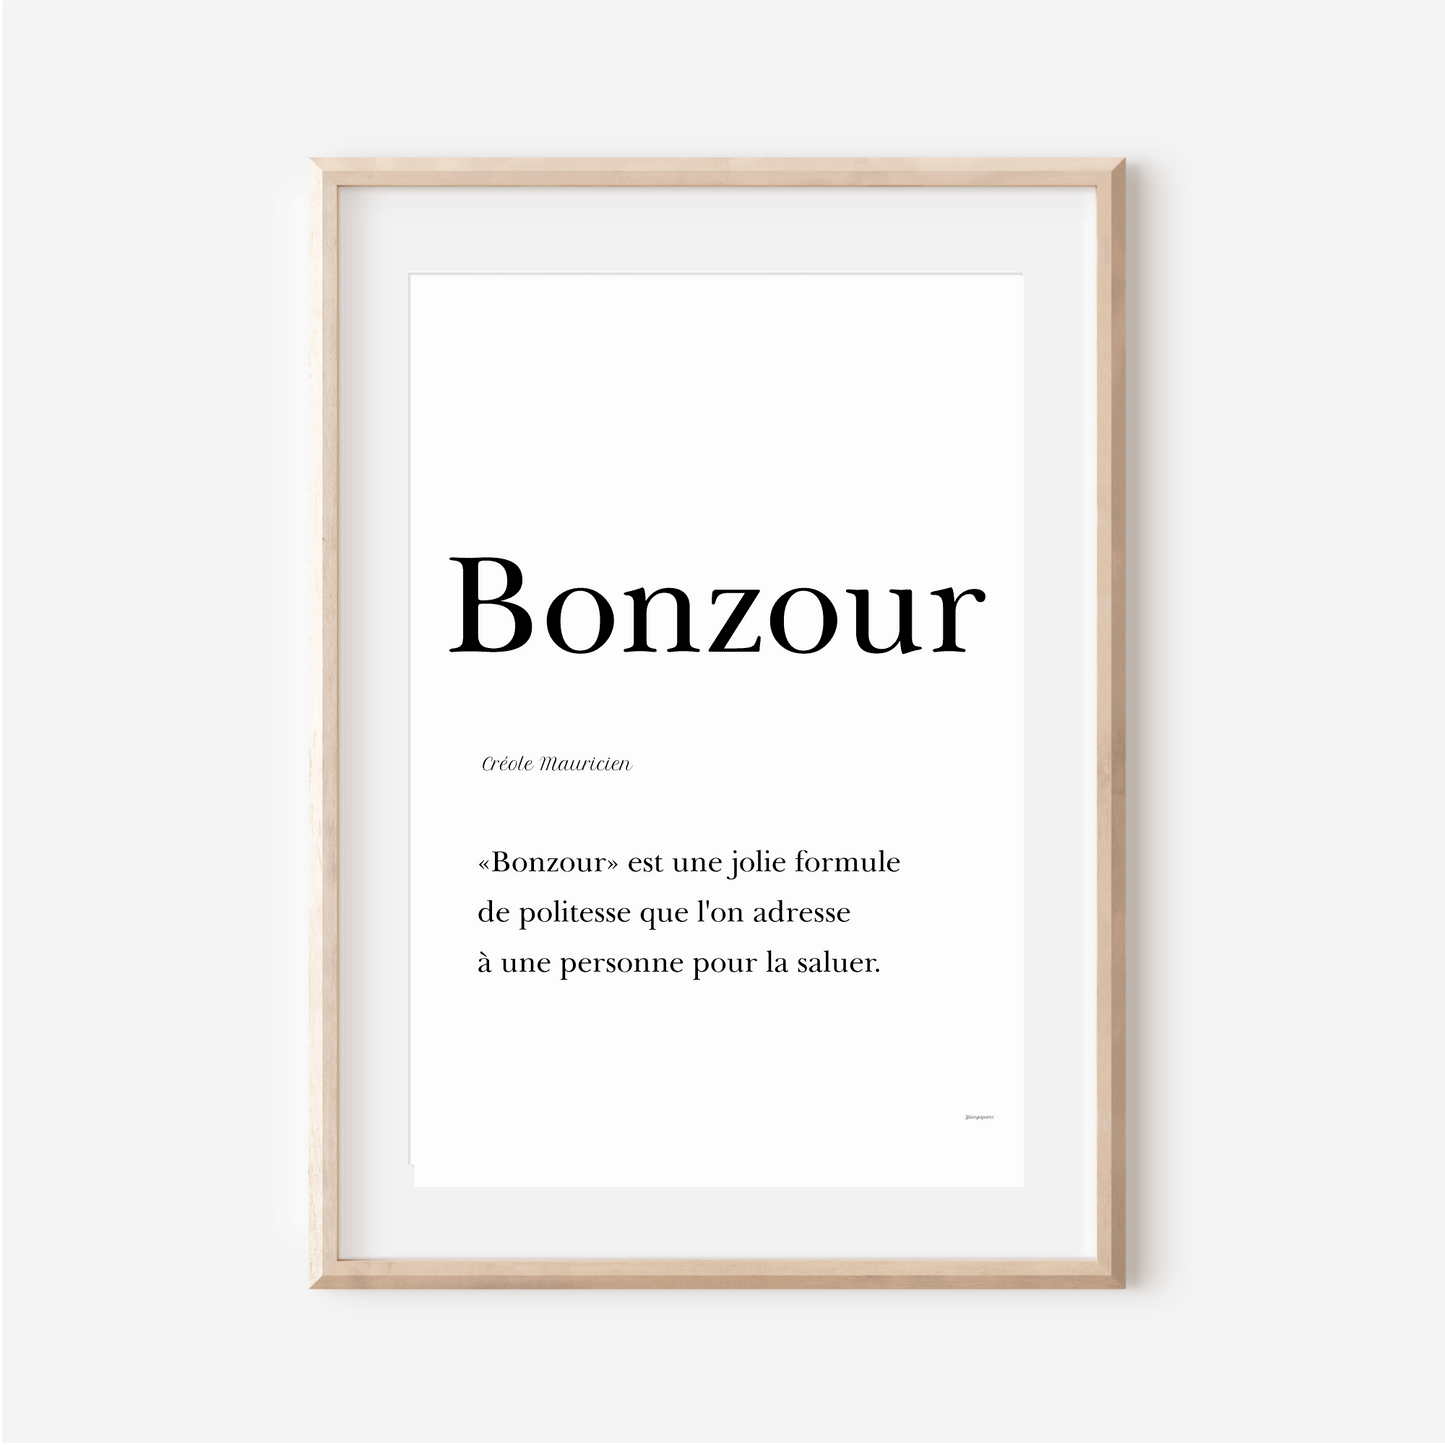 Affiche "Bonzour" - Bonjour en Créole Mauricien